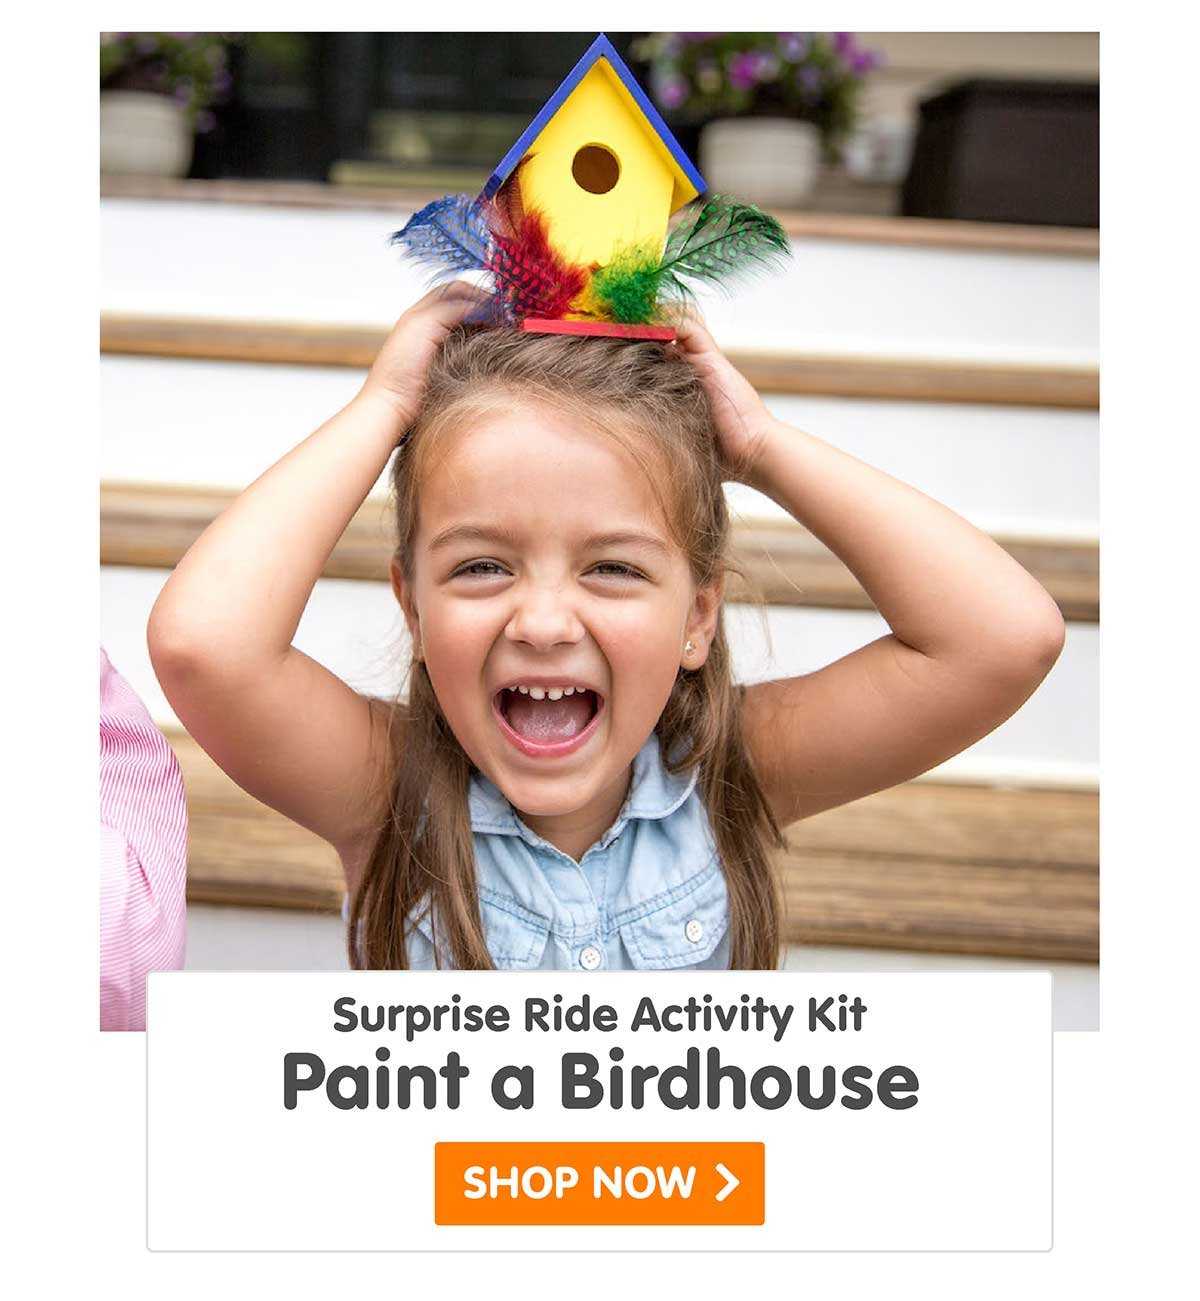 Surprise Ride - Paint a Birdhouse Activity Kit